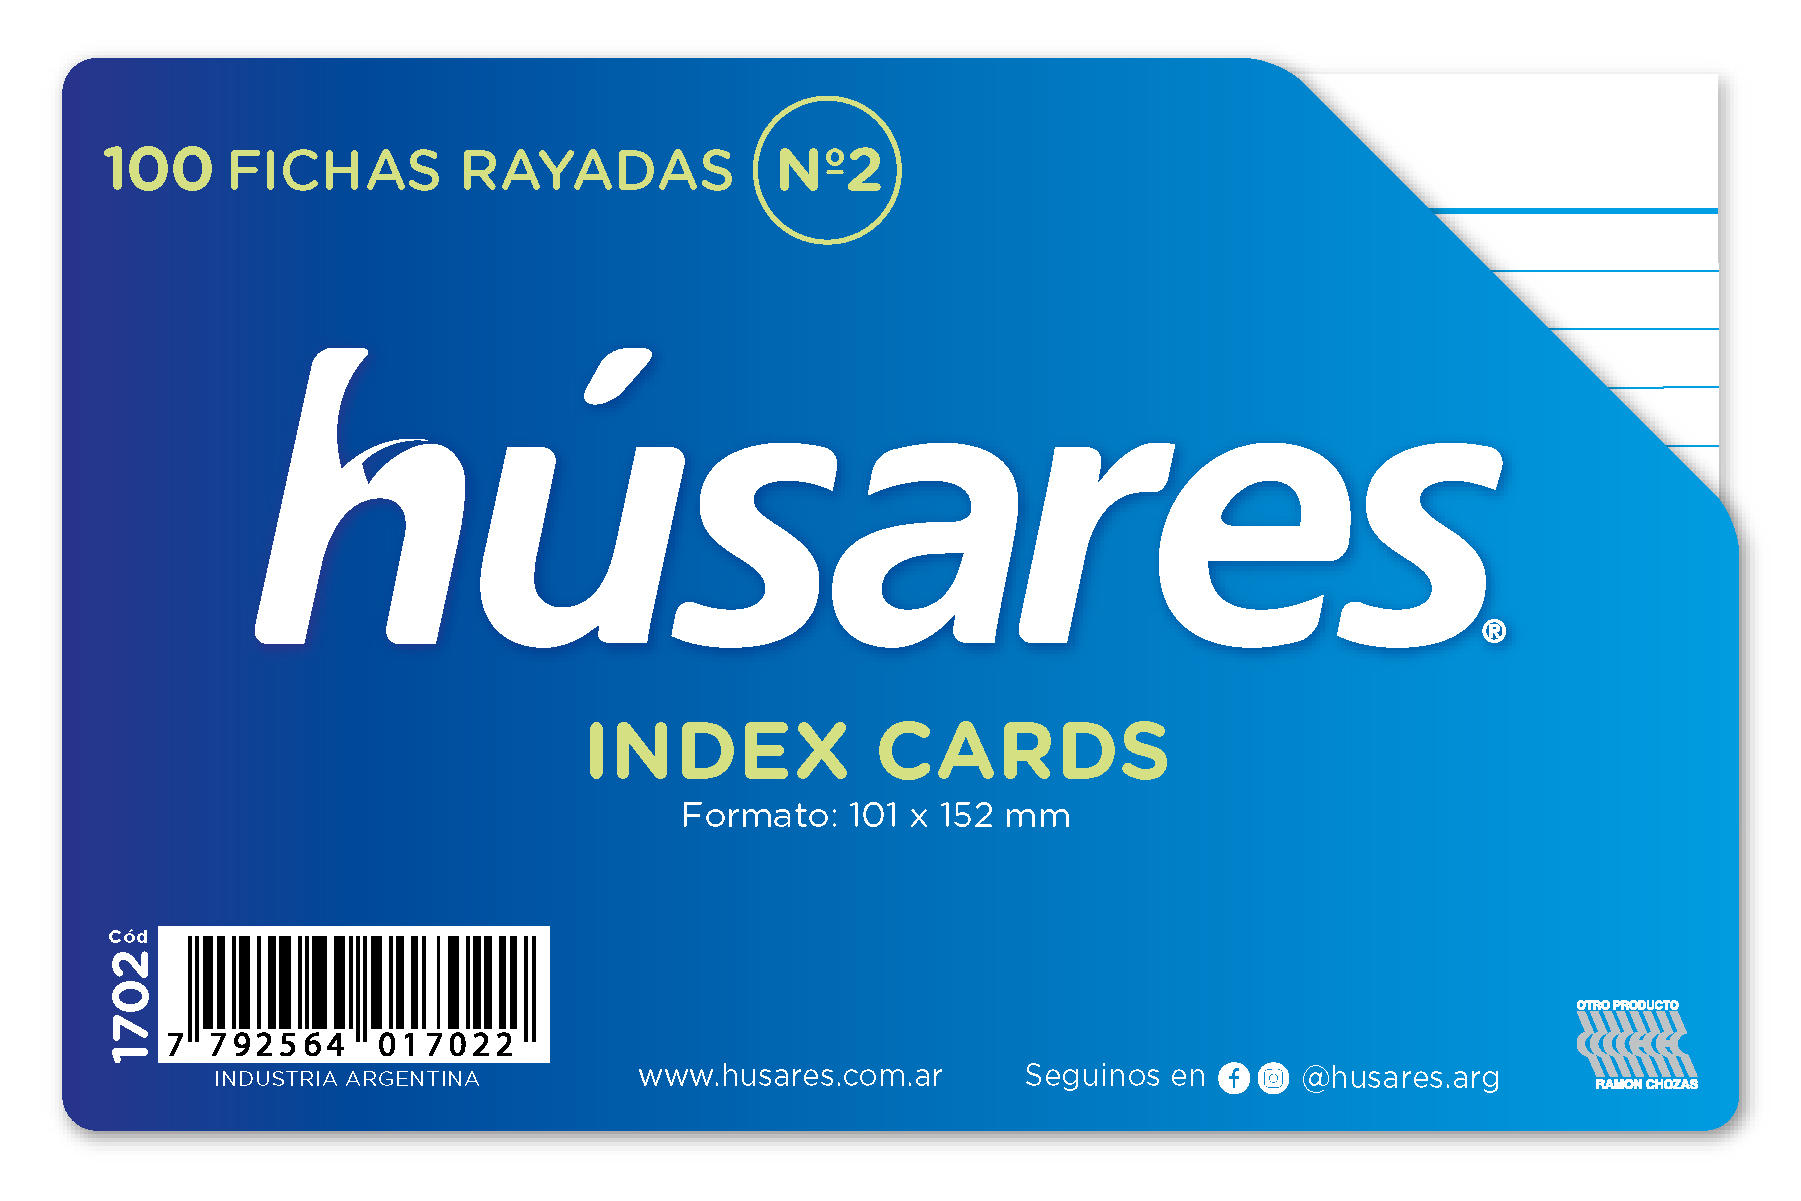 FICHAS RAYADAS HUSARES X 100 Nº 2